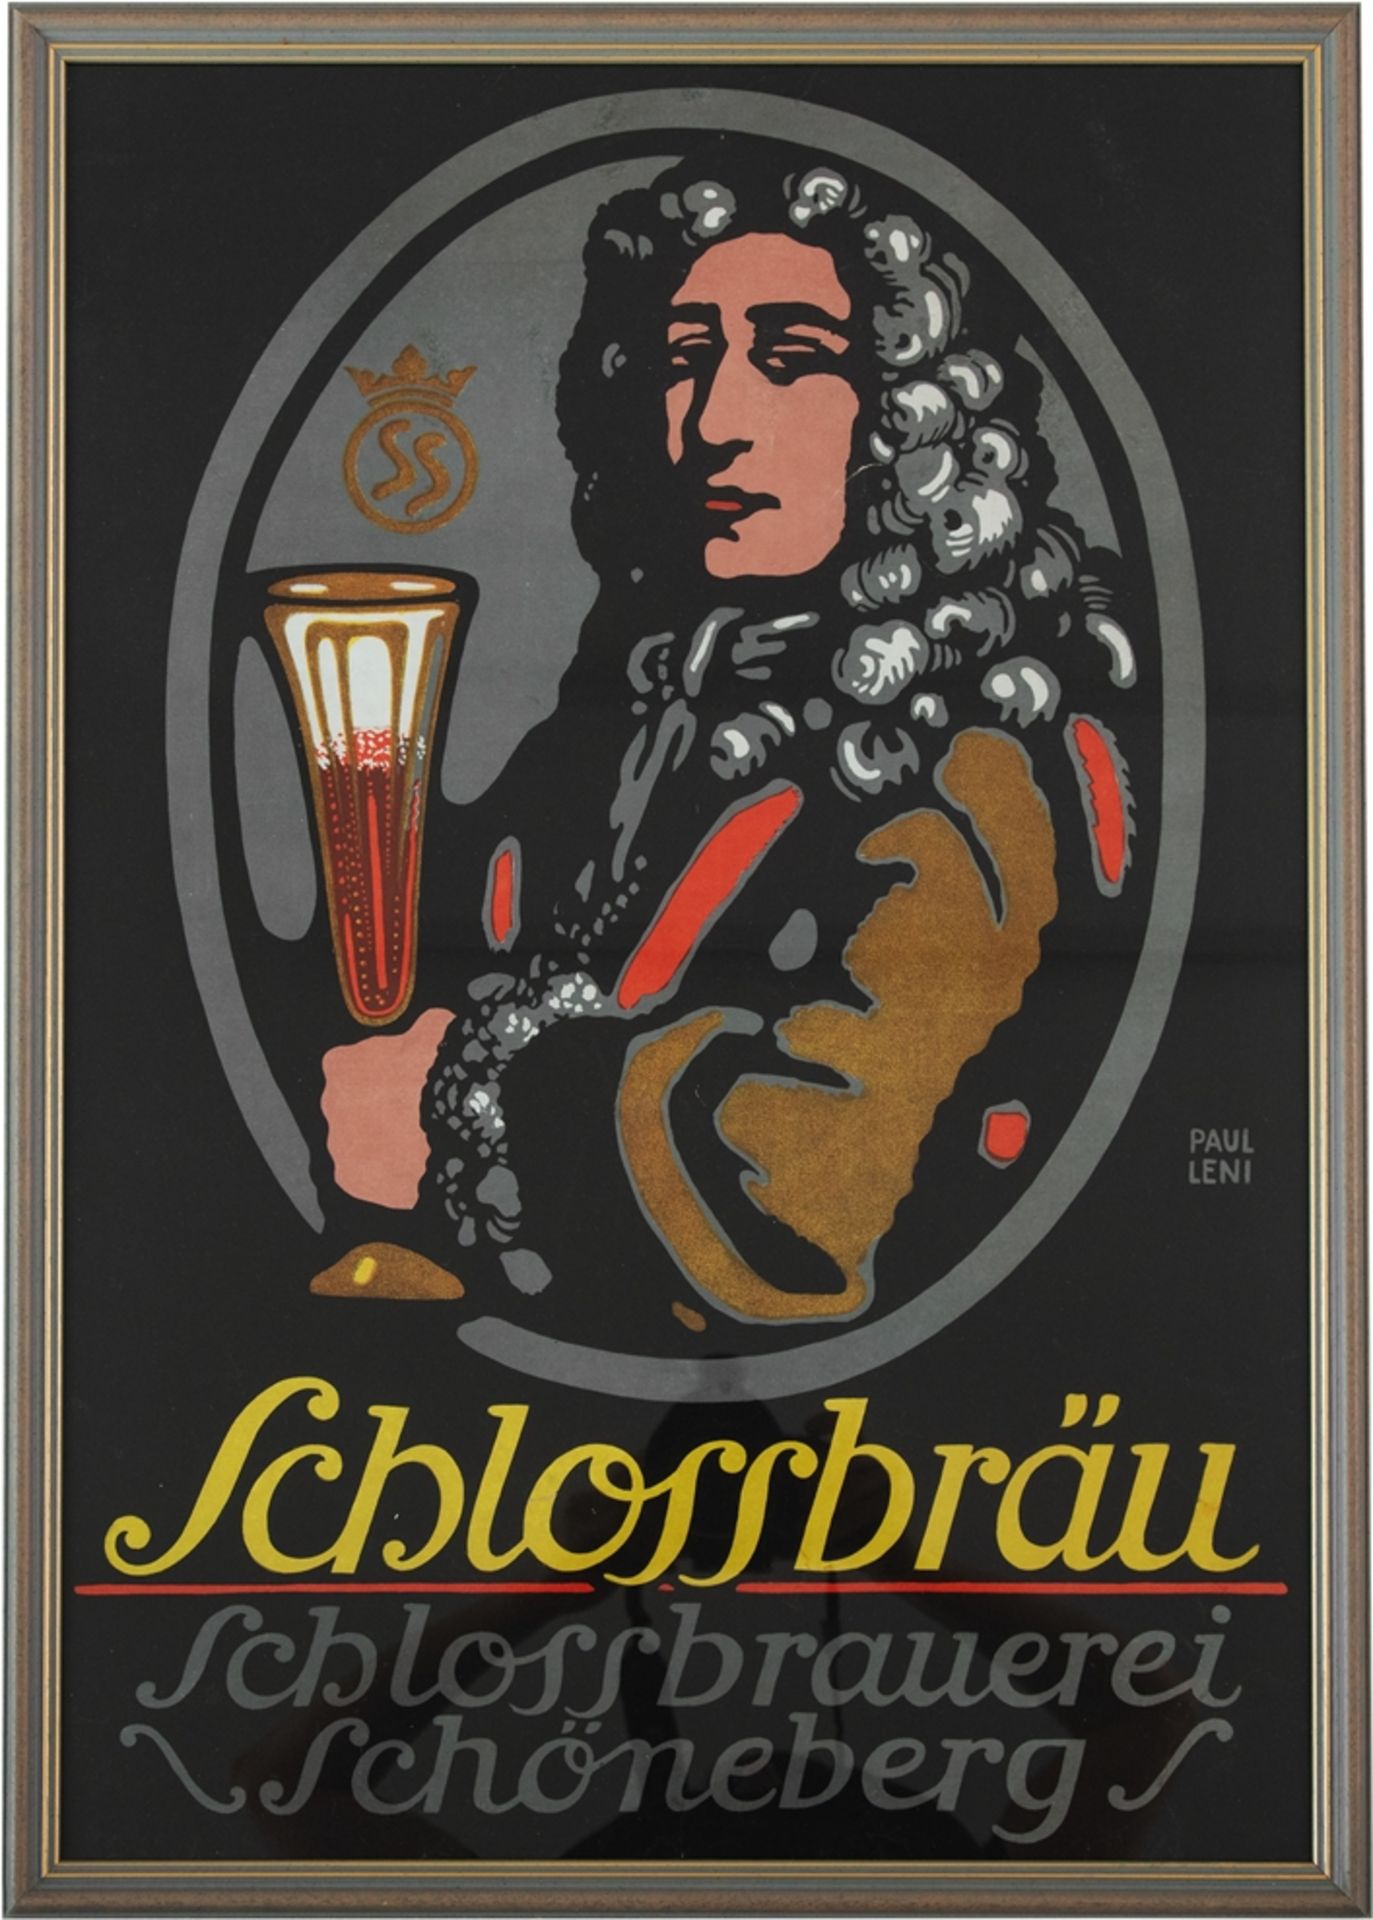 Paul Leni (1885 - 1929) Plakat Schlossbrauerei Schöneberg, Berlin, um 1920